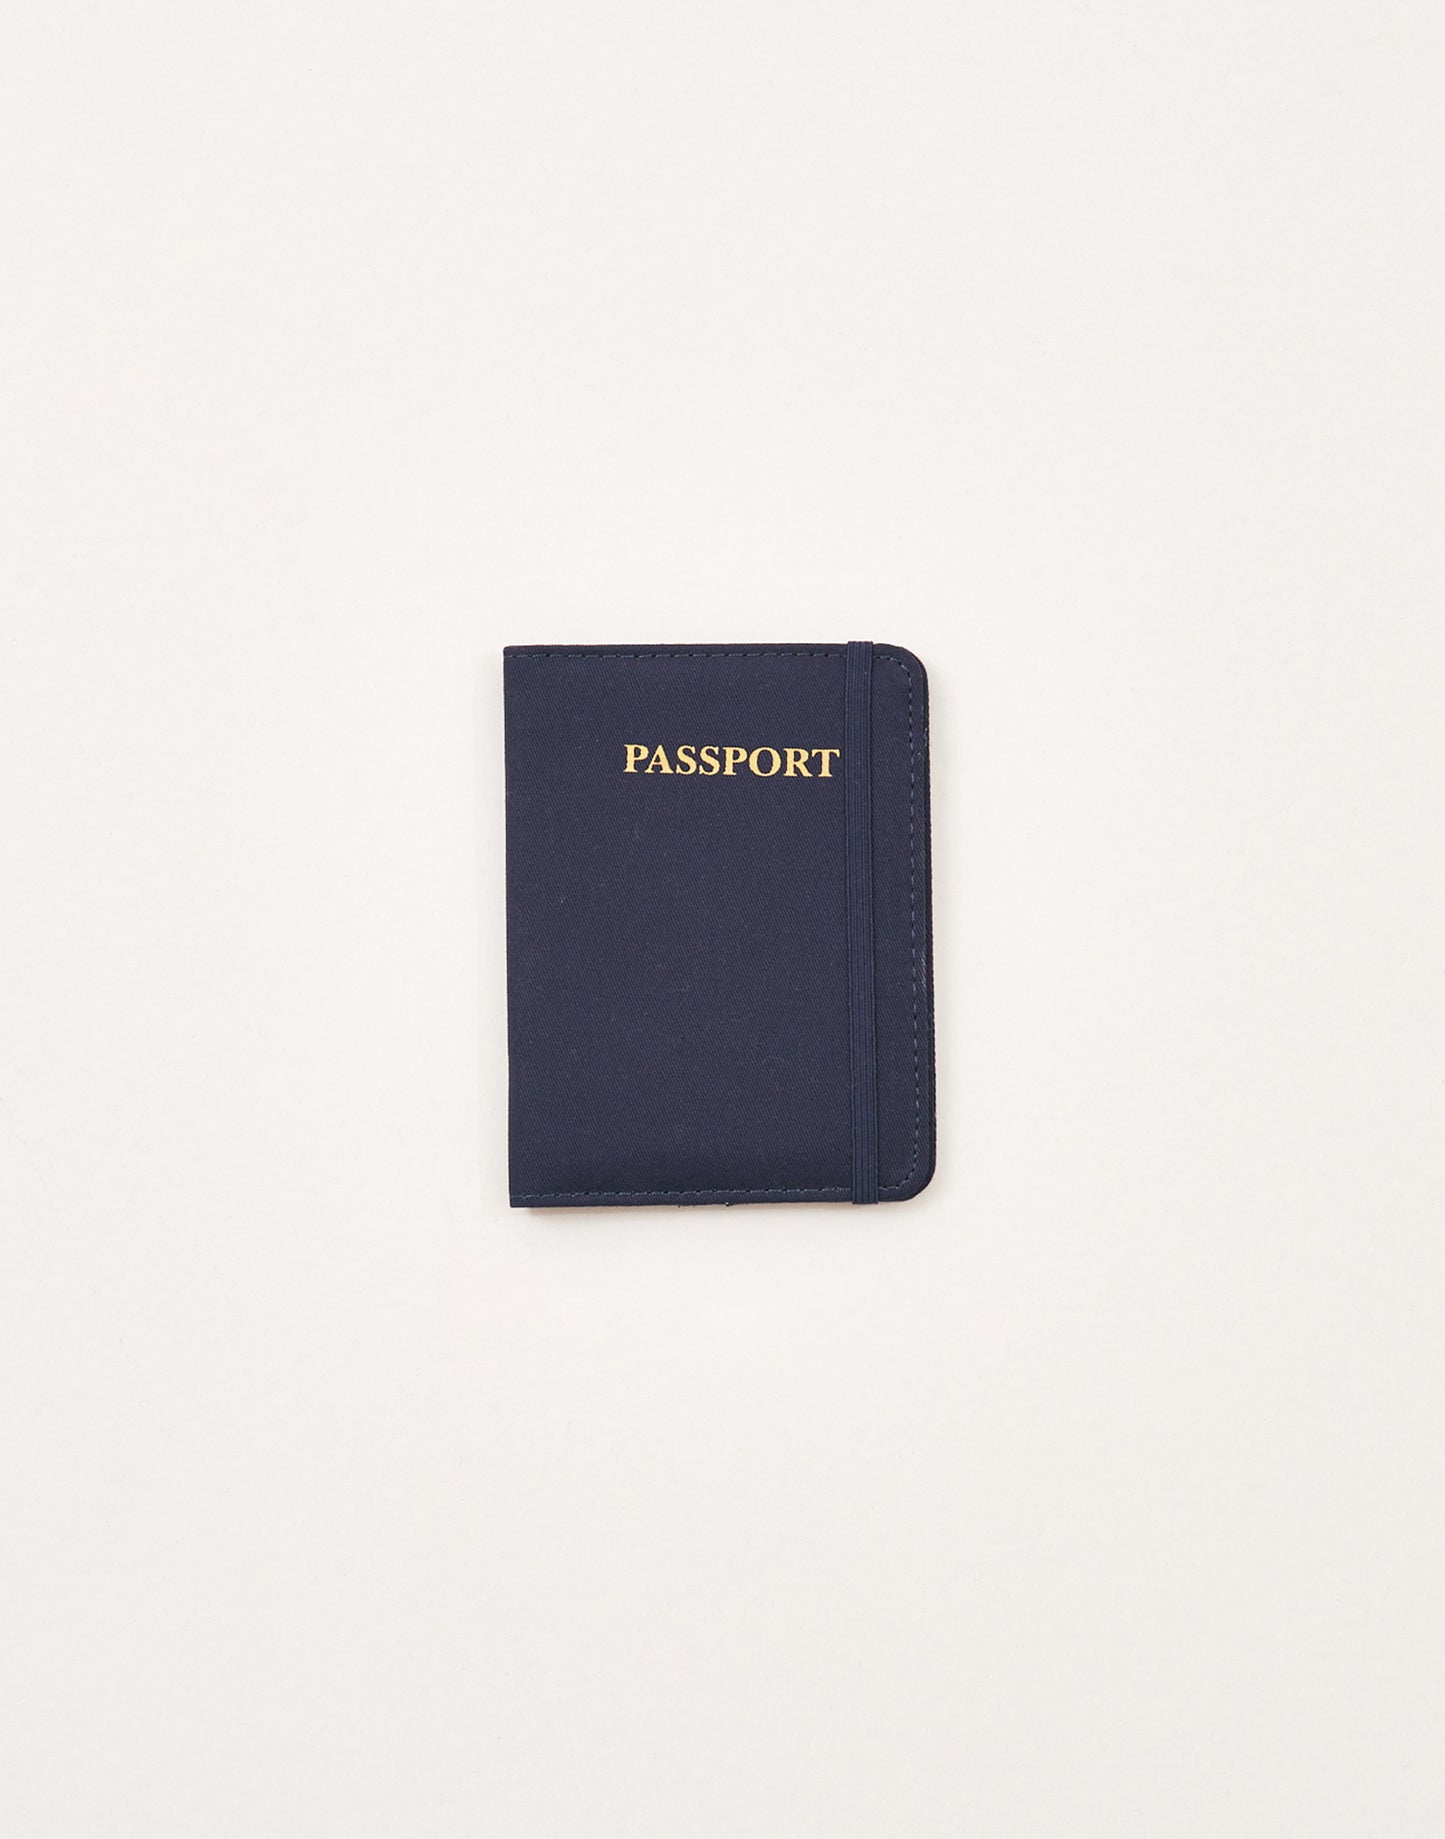 Porte-passeport en coton